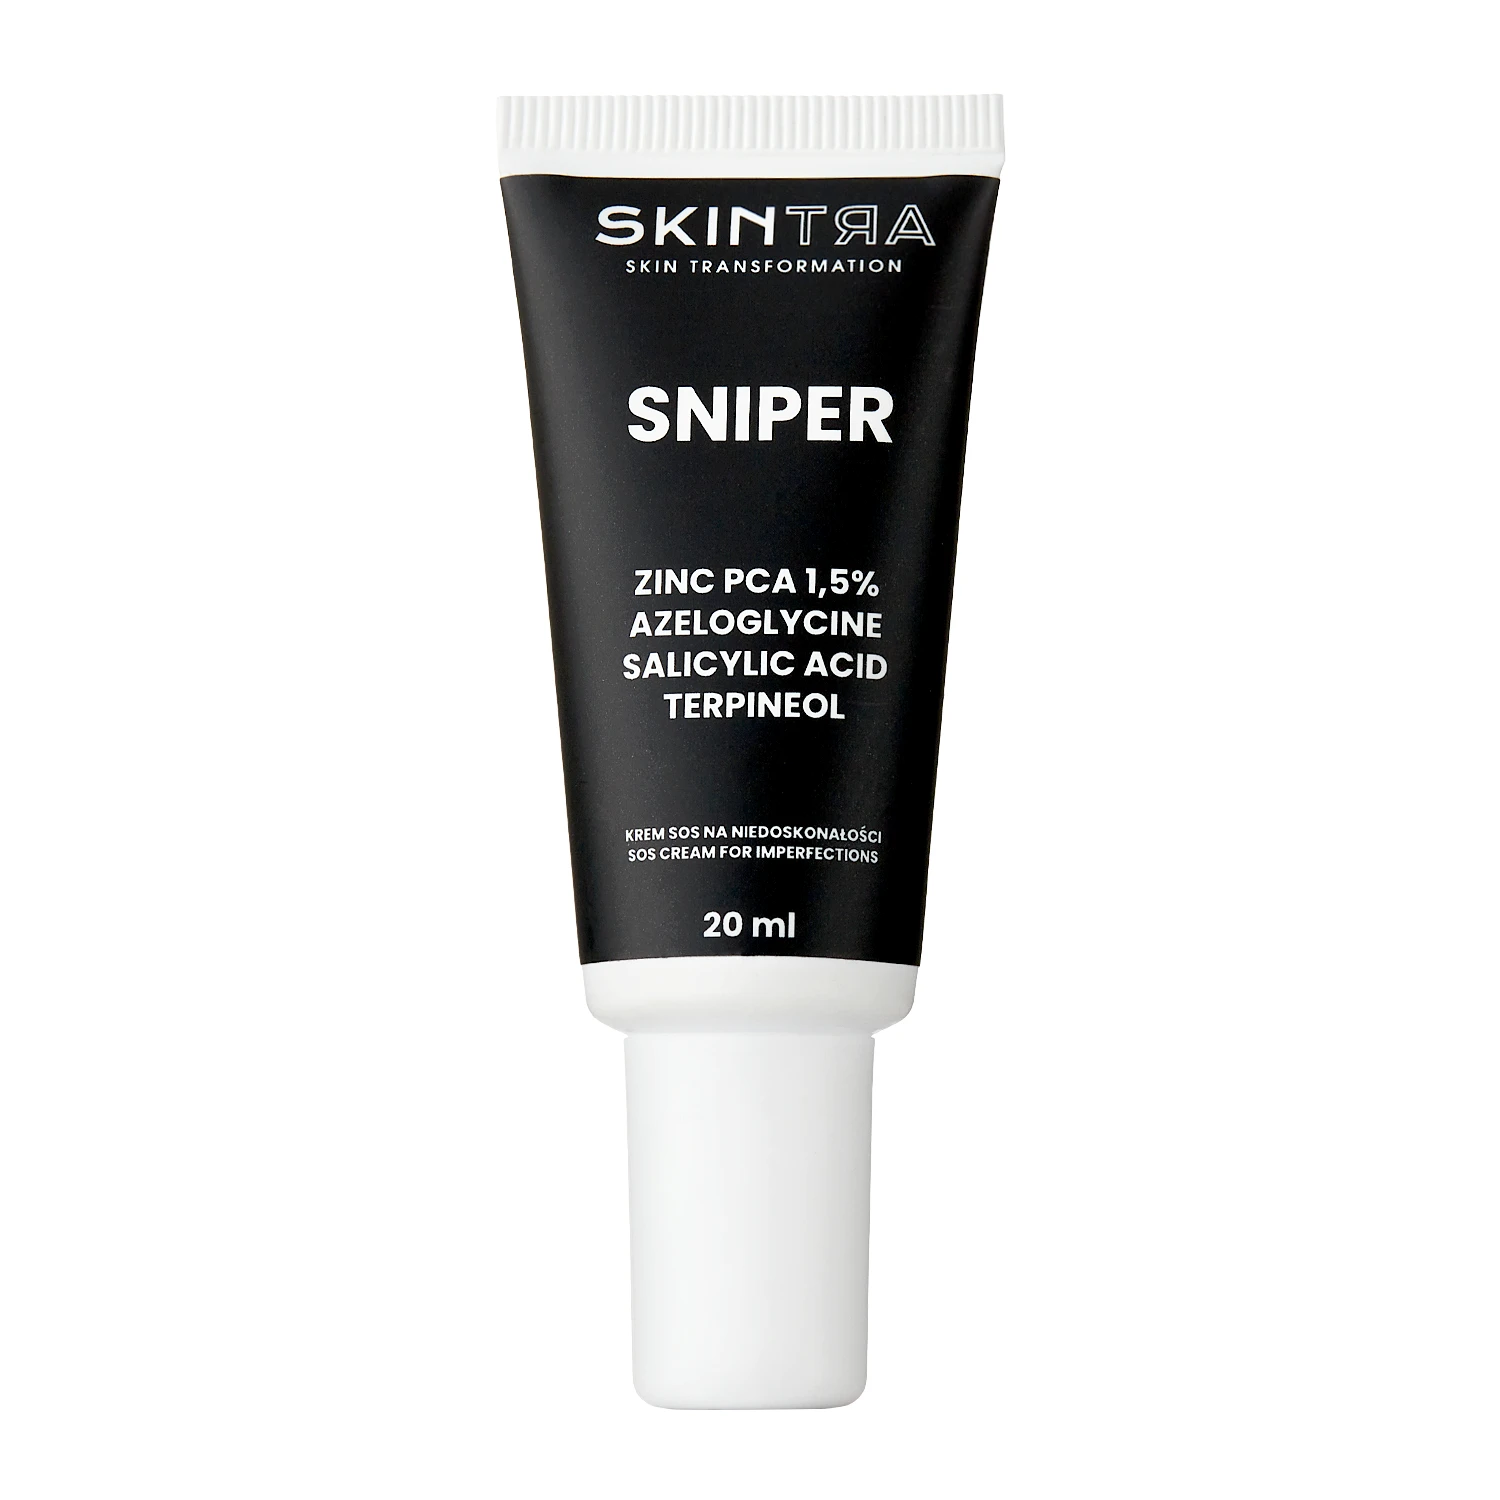 SkinTra - Sniper - Creme für Unvollkommenheiten - 20ml 